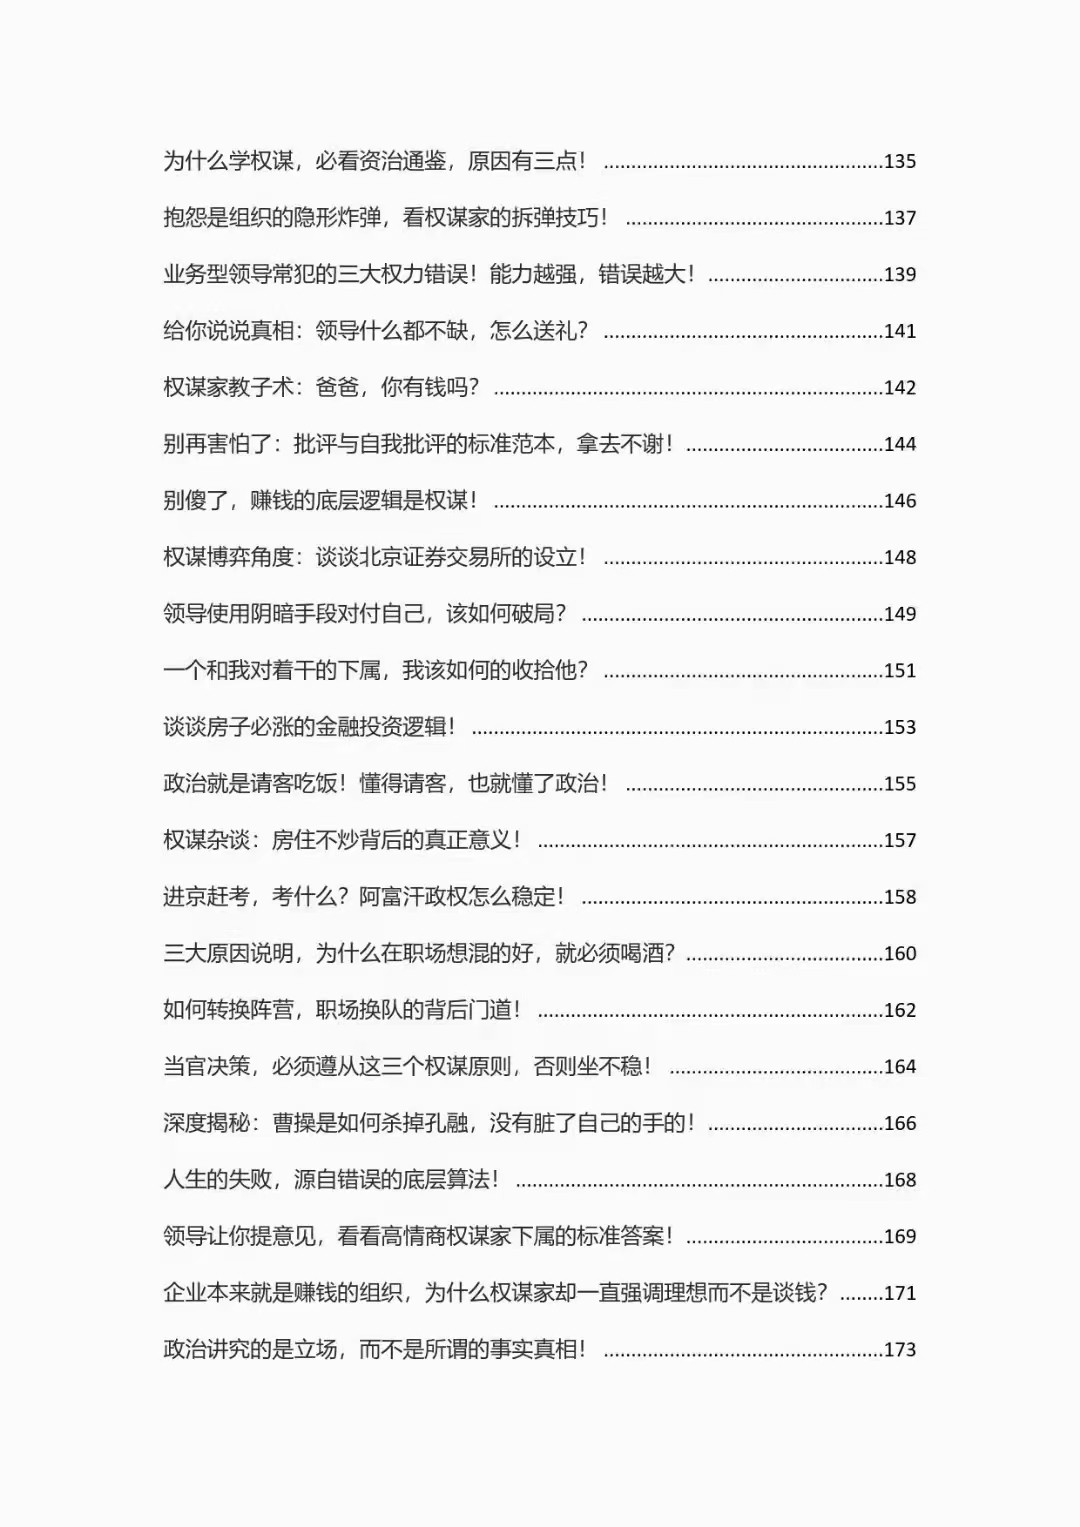 《顶级谋士说》[独家无水印]「百度网盘下载」PDF 电子书插图4